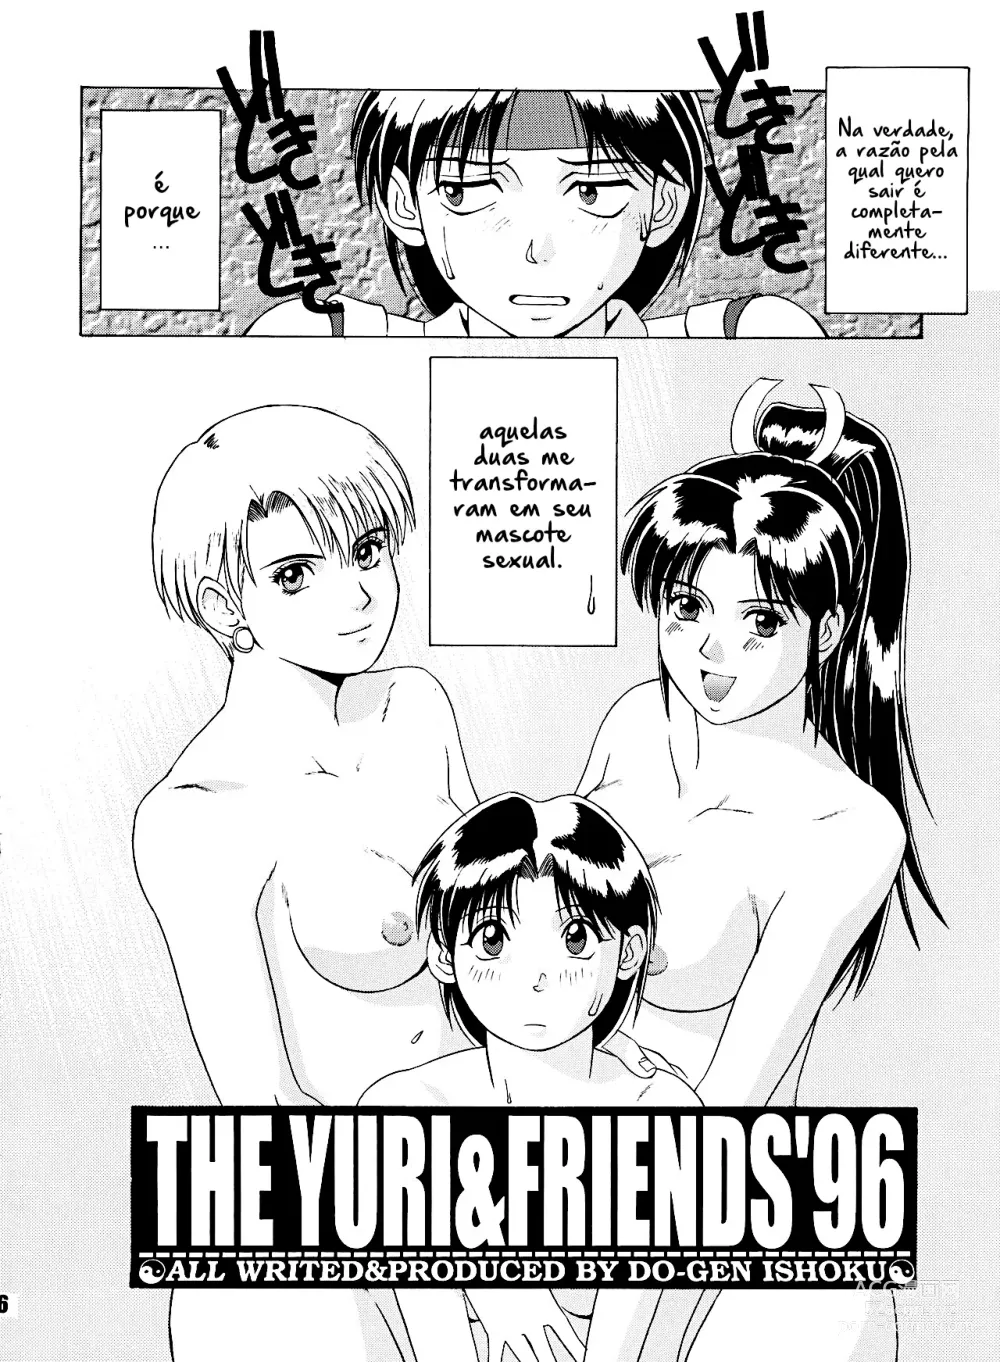 Page 5 of doujinshi The Yuri & Friends 96